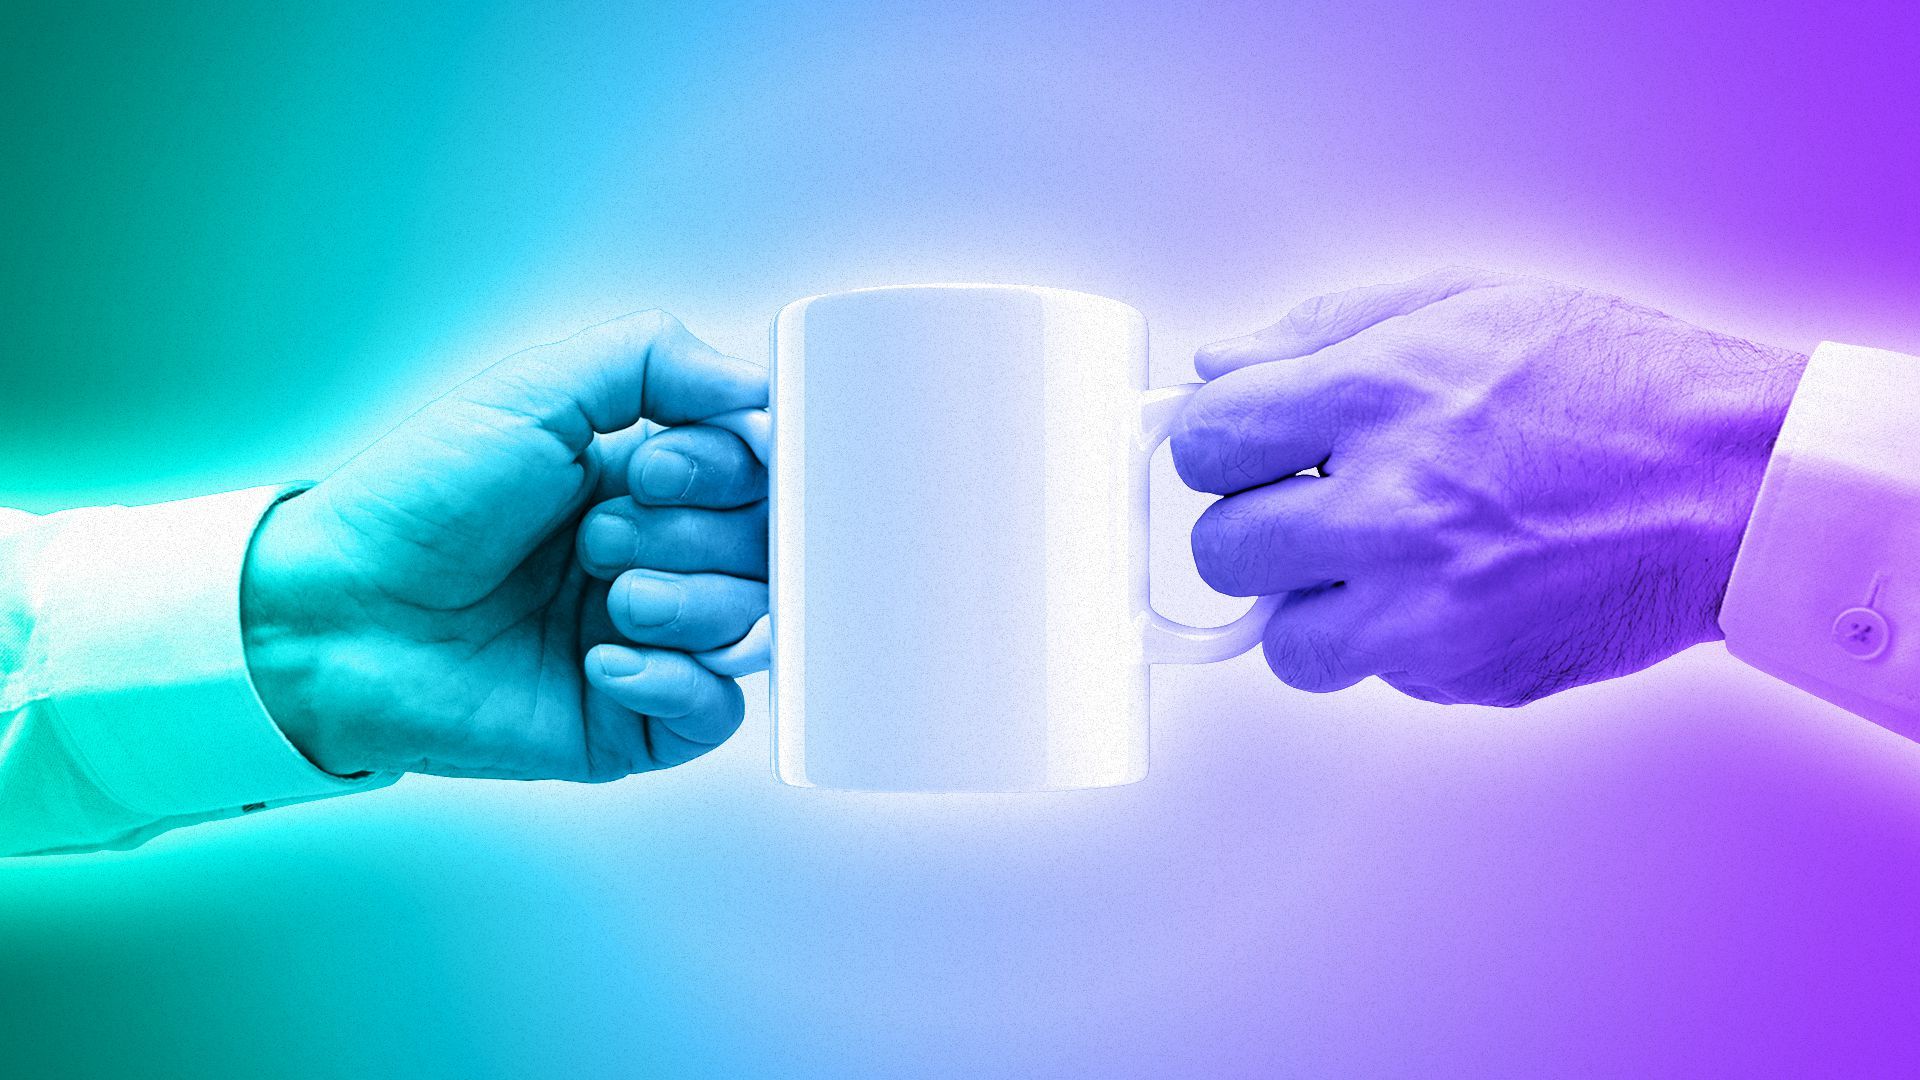 Illustration of hands grasping mug handles on opposite sides of the same mug.